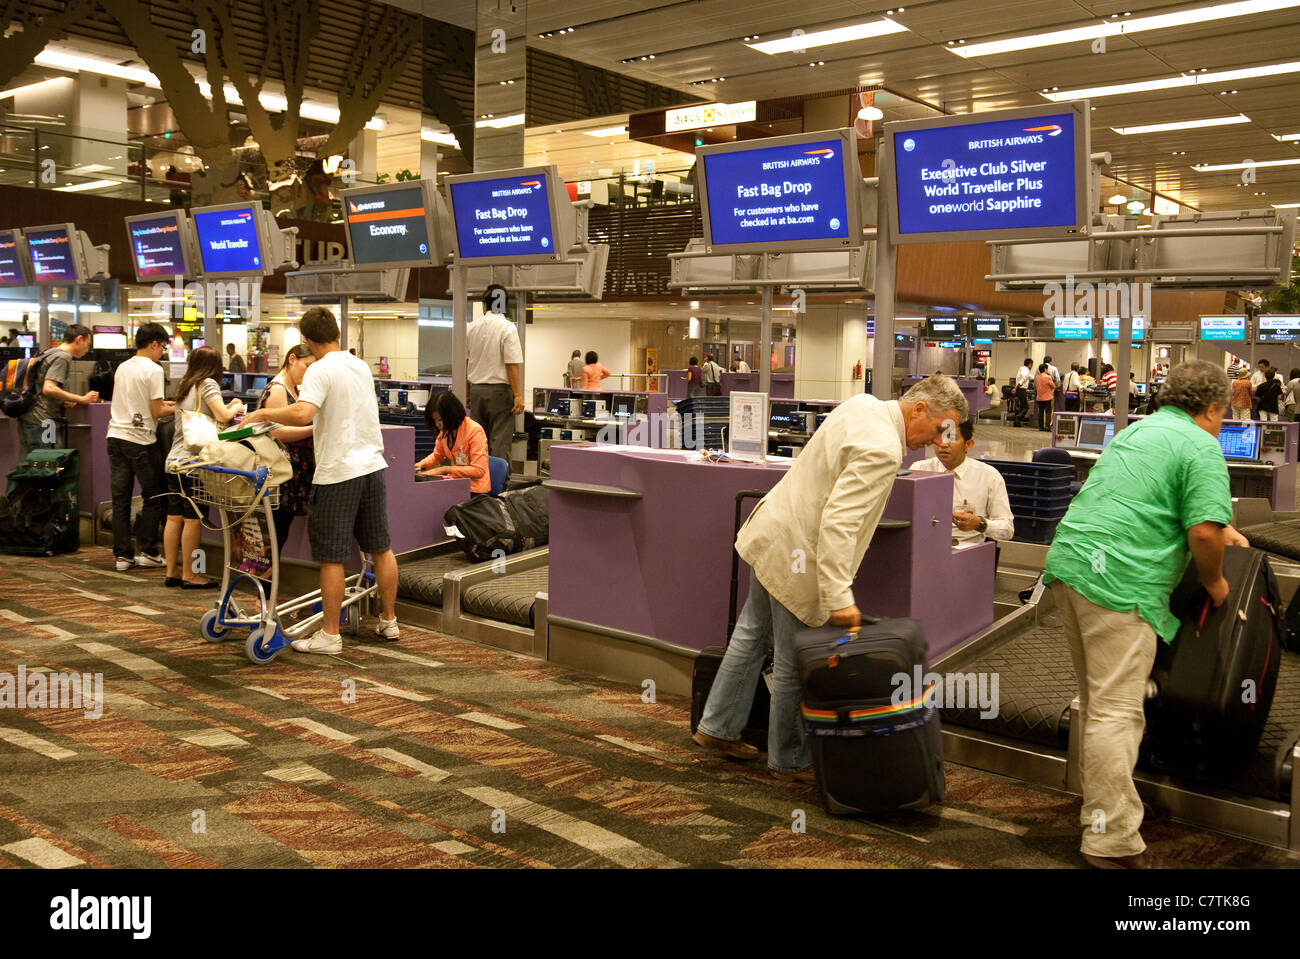 Passagers à l'arrivée de British Airways et bag drop, l'aéroport de Changi à Singapour Banque D'Images